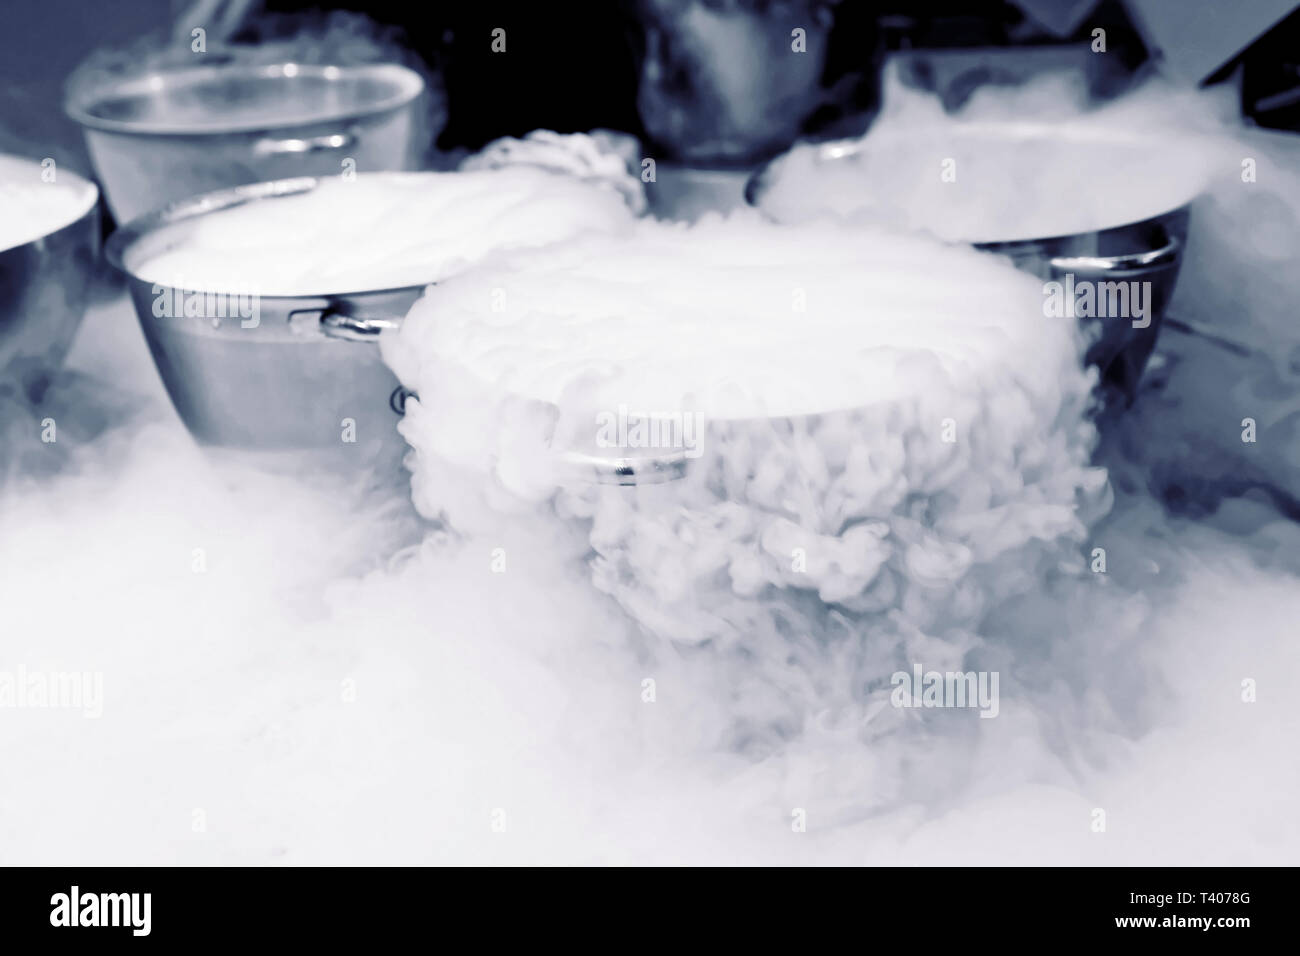 Die Eis mit flüssigem Stickstoff, professionelles Kochen Stockfotografie -  Alamy